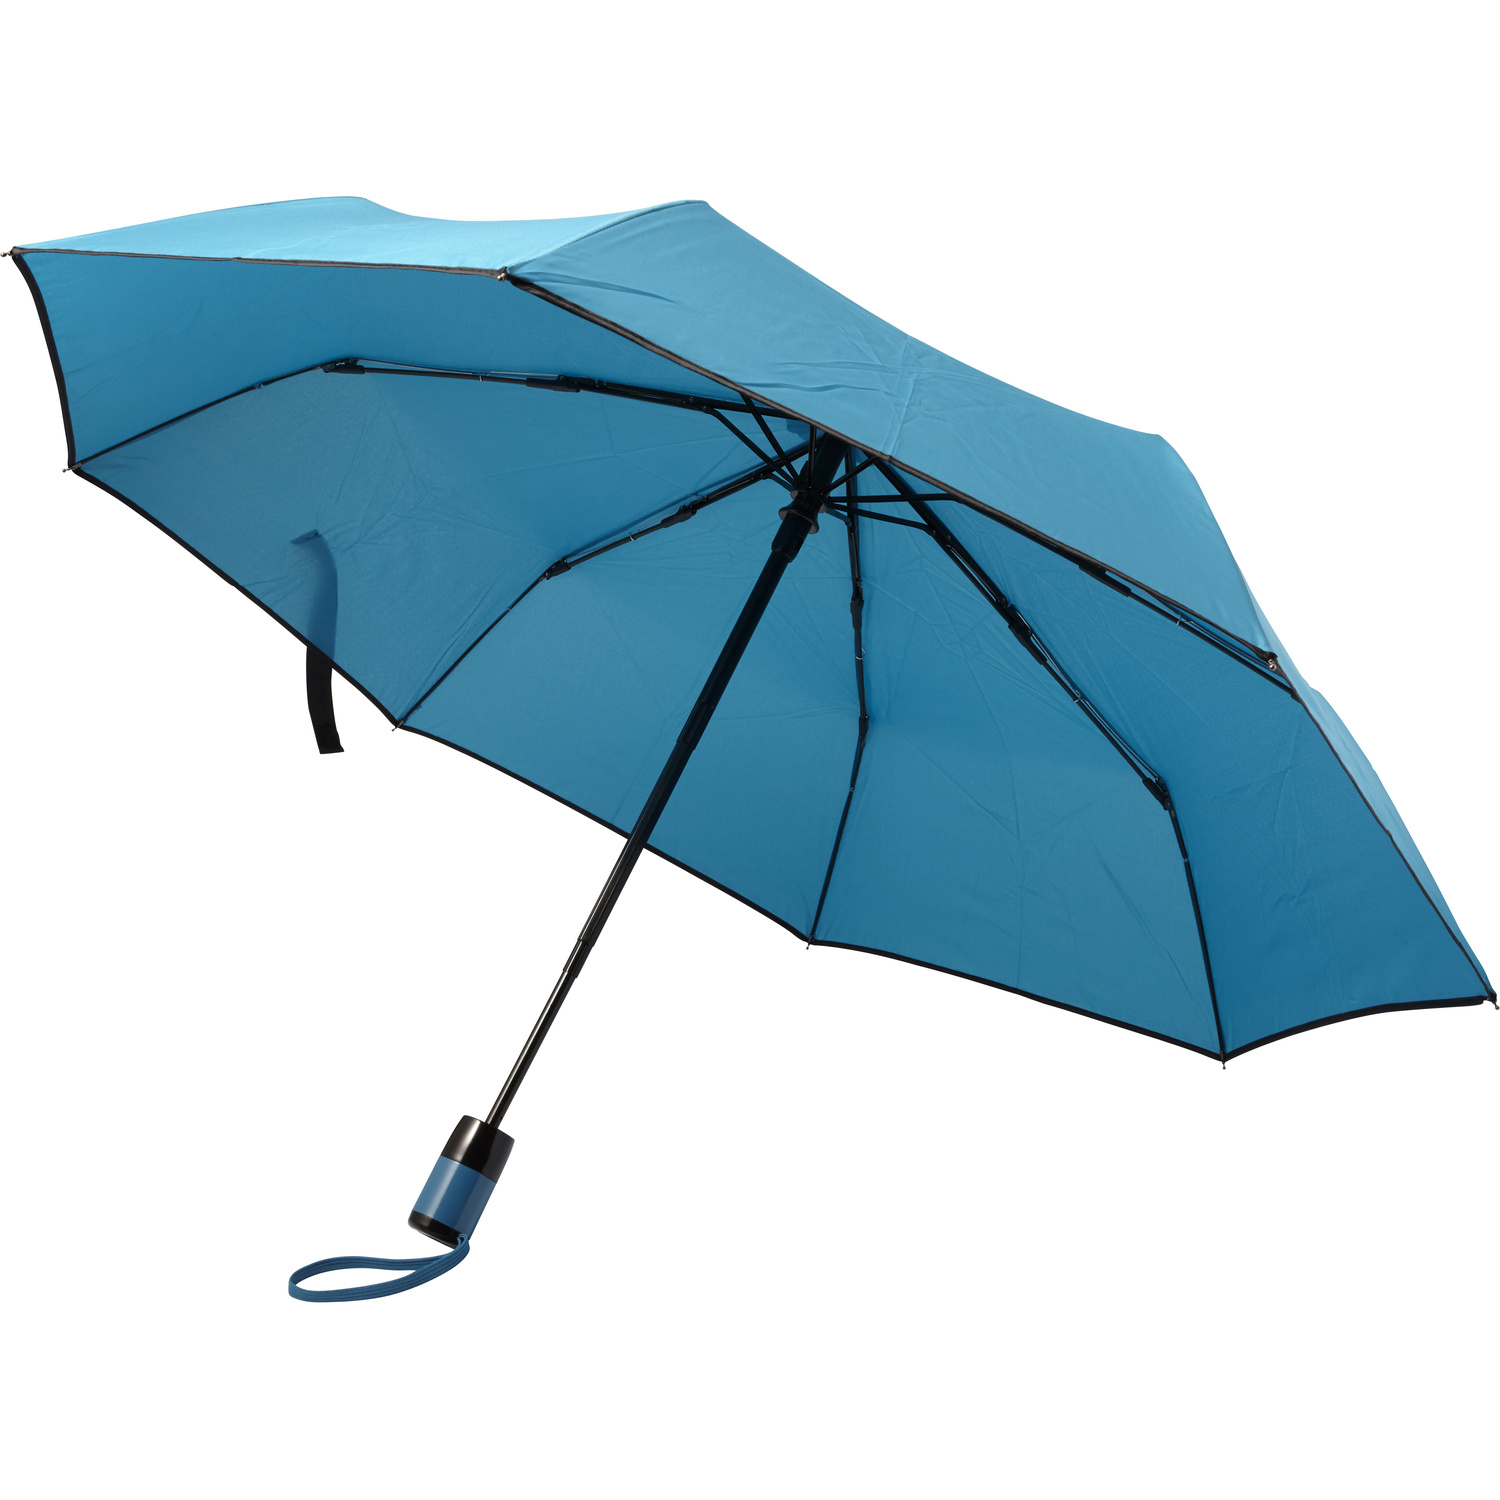 007964 018999999 3d045 rgt pro02 fal - Foldable storm umbrella